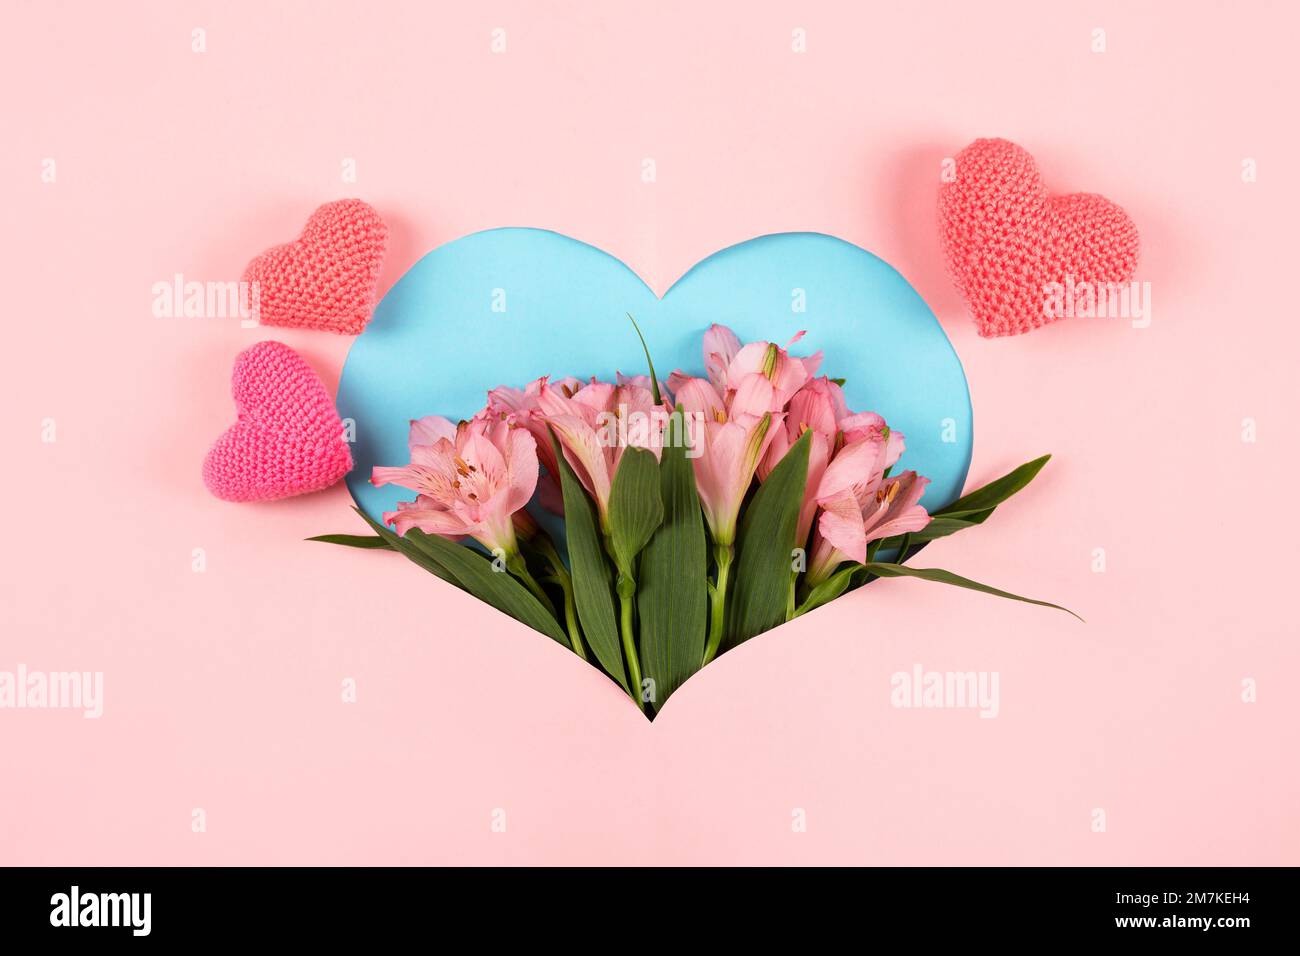 Zusammensetzung der lila Blüten Alstroemeria mit einem gestrickten rosa Herz auf rosa Hintergrund in Form eines Herzens. Valentinstagskonzept, Grüße Stockfoto